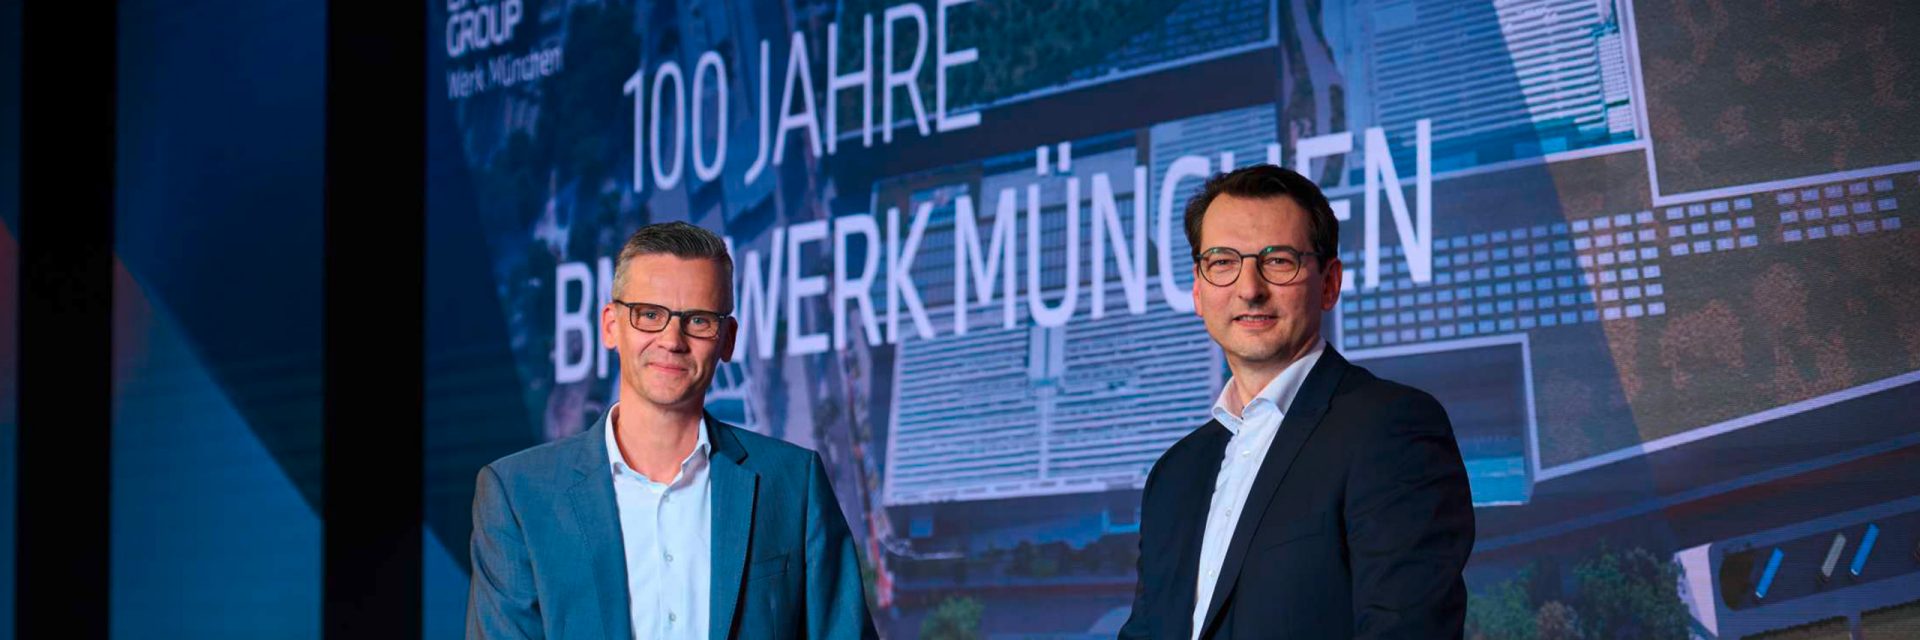 100 Jahre BMW Werk München: „Dieses Werk ist Herkunft. Und zugleich Zukunft.“